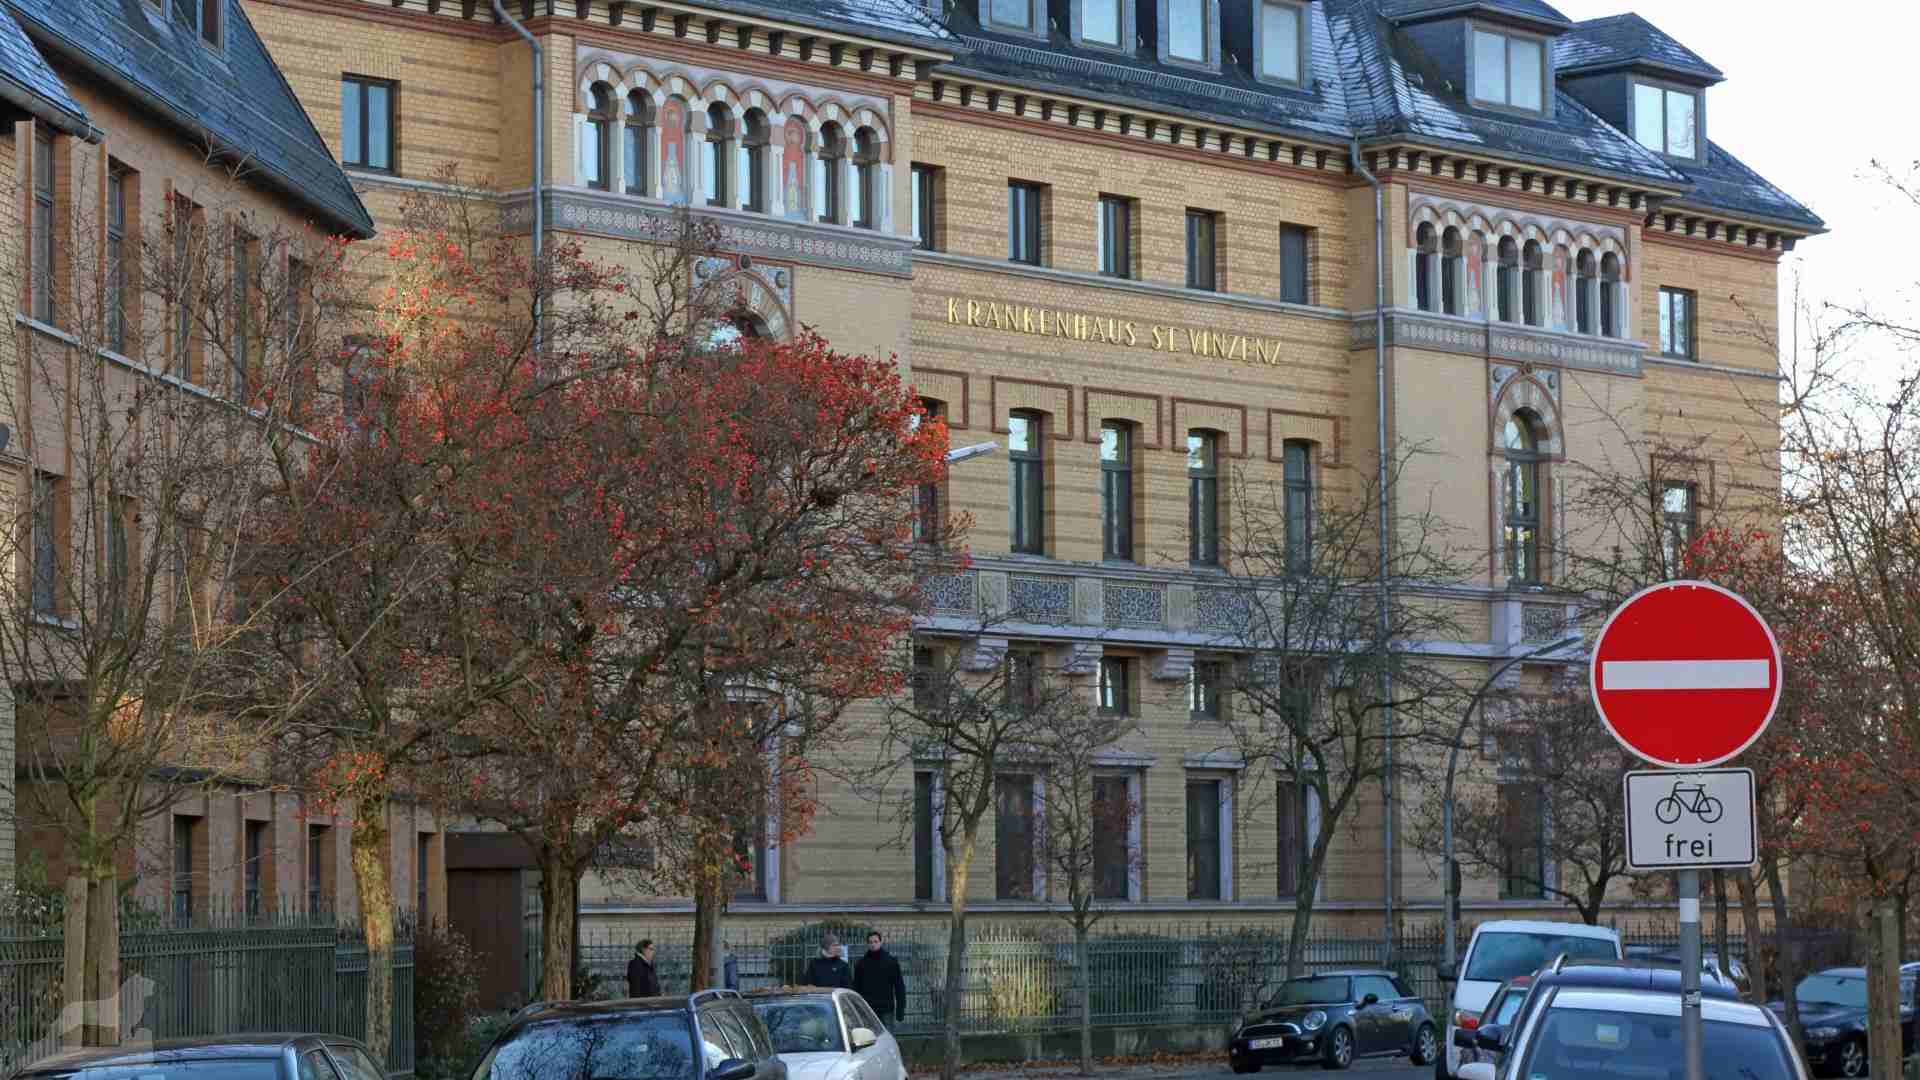 ehemaliges St. Vinzenz-Krankenhaus (heute Seniorenheim) in der Bismarckstraße